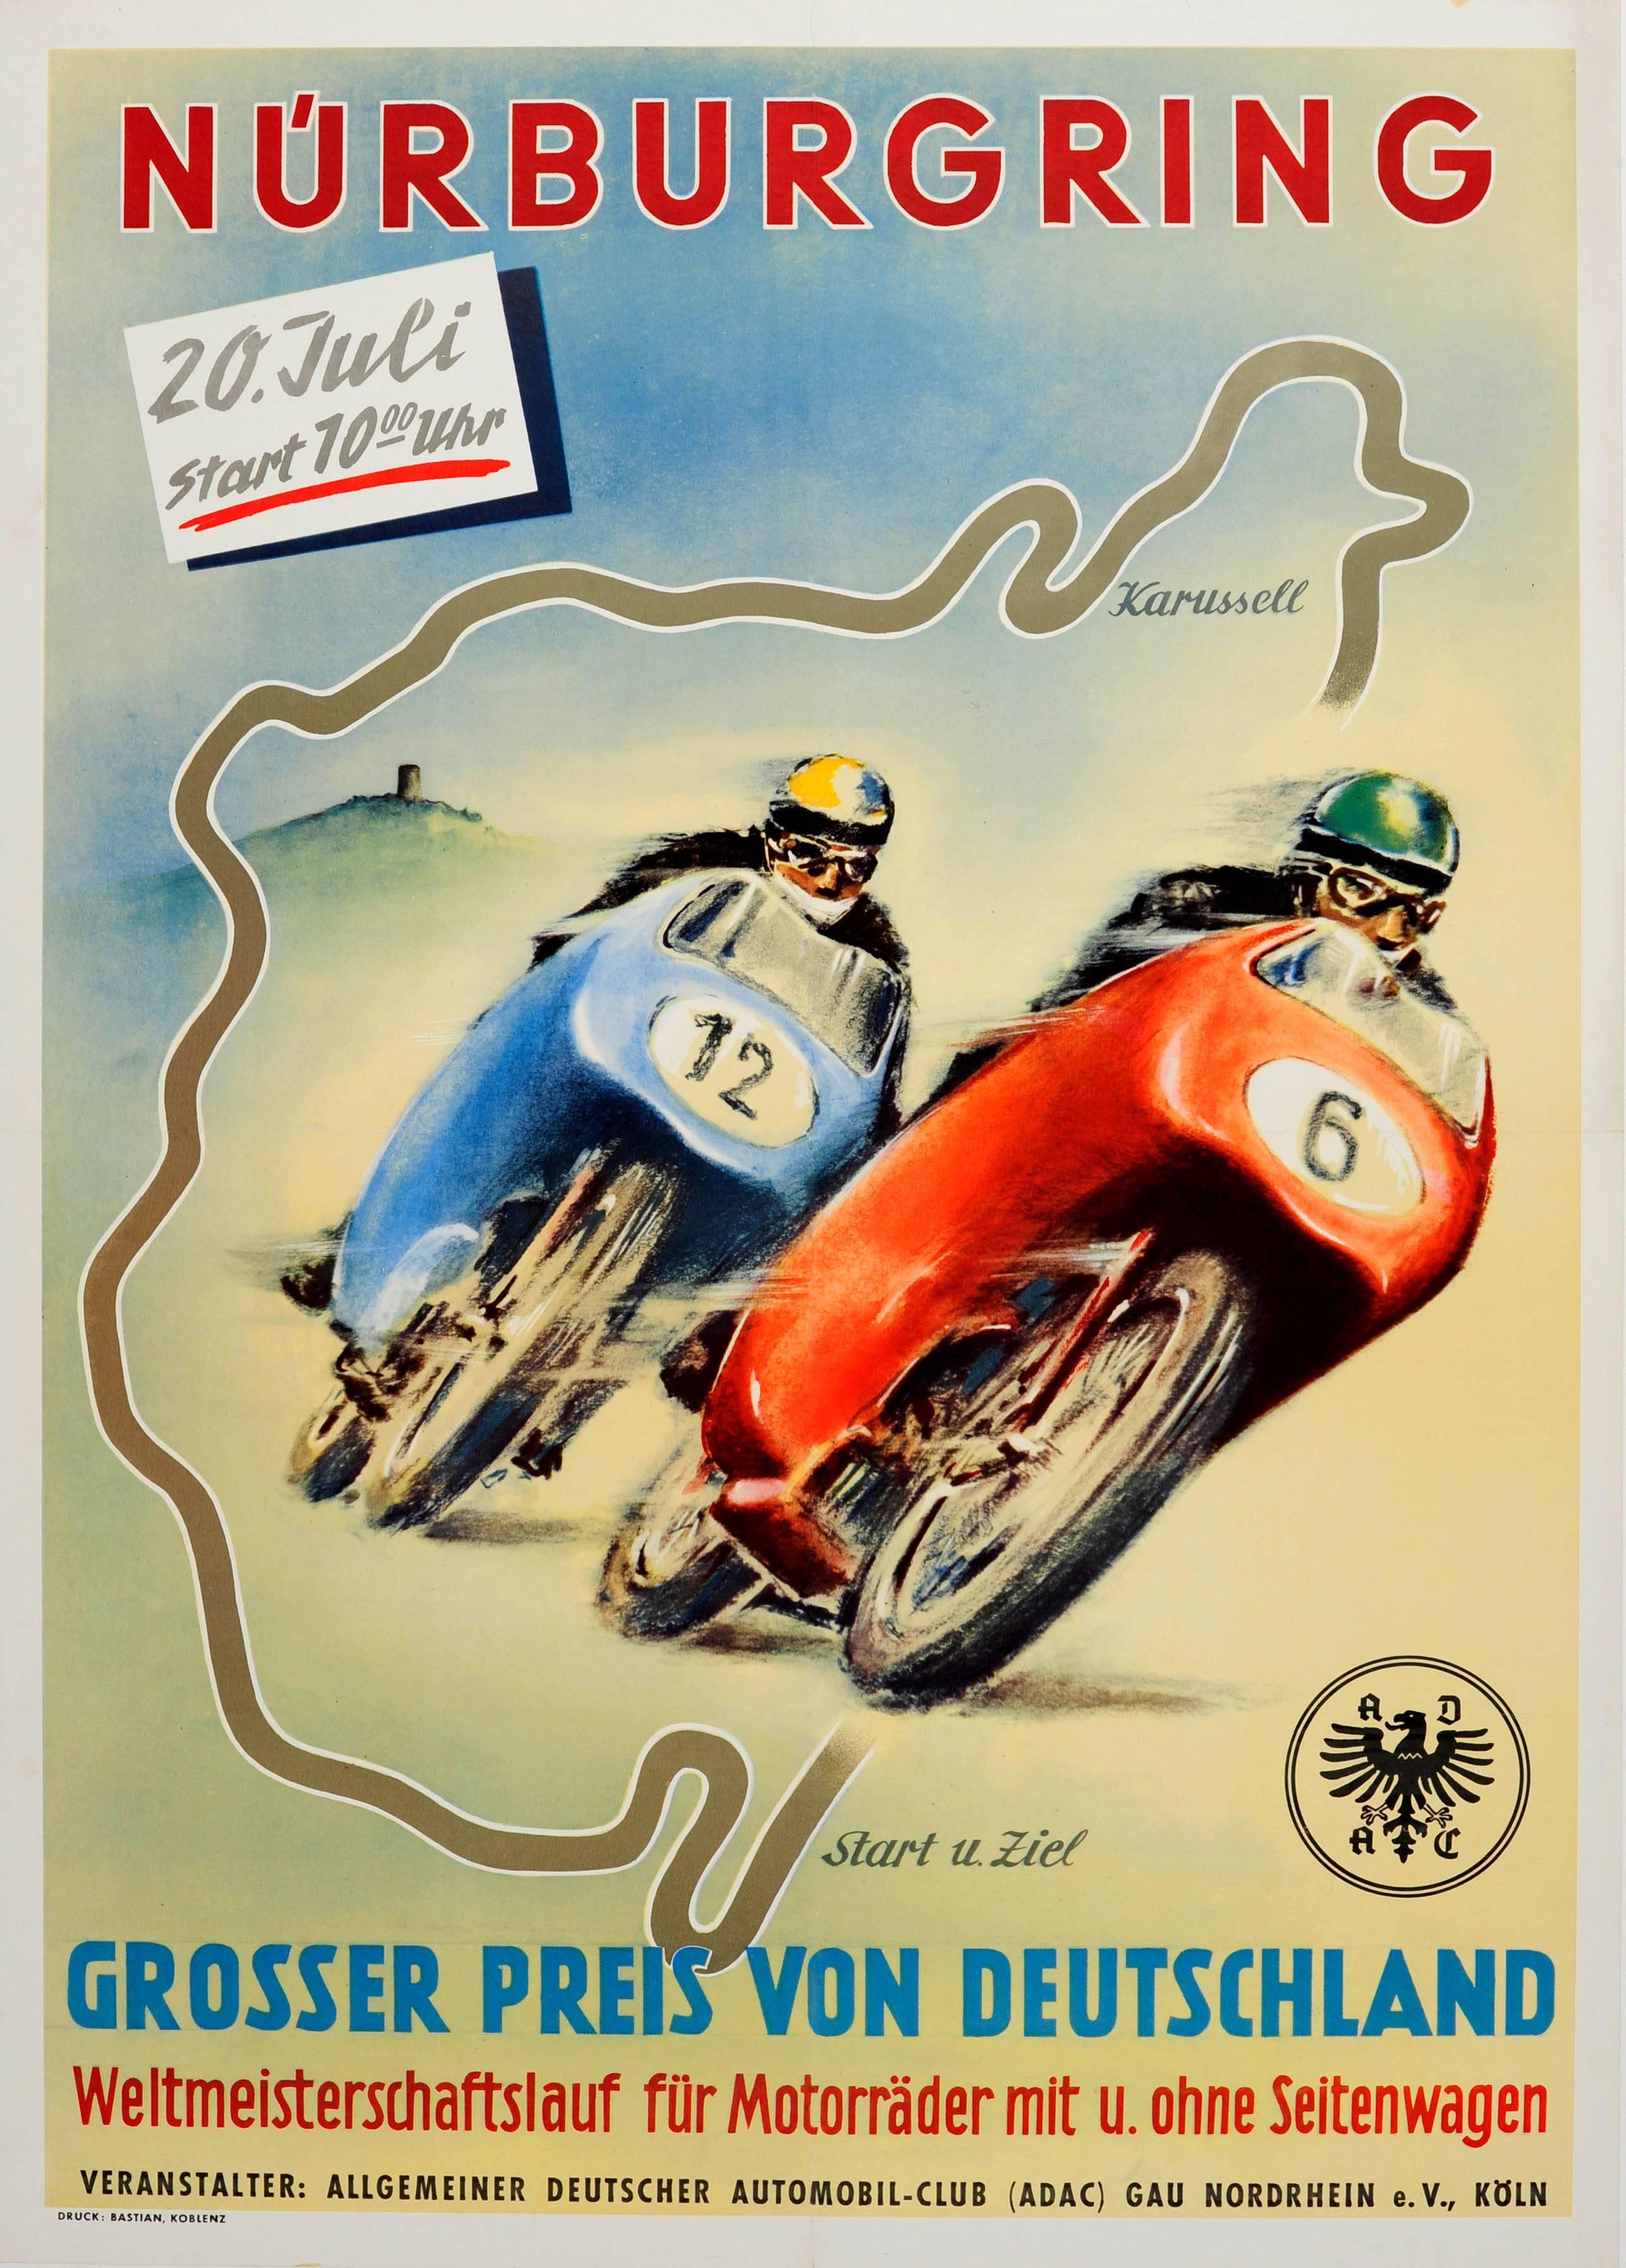 Unknown Print - Original Vintage Motorcycle Racing Poster - Nurburgring German Grand Prix 1955